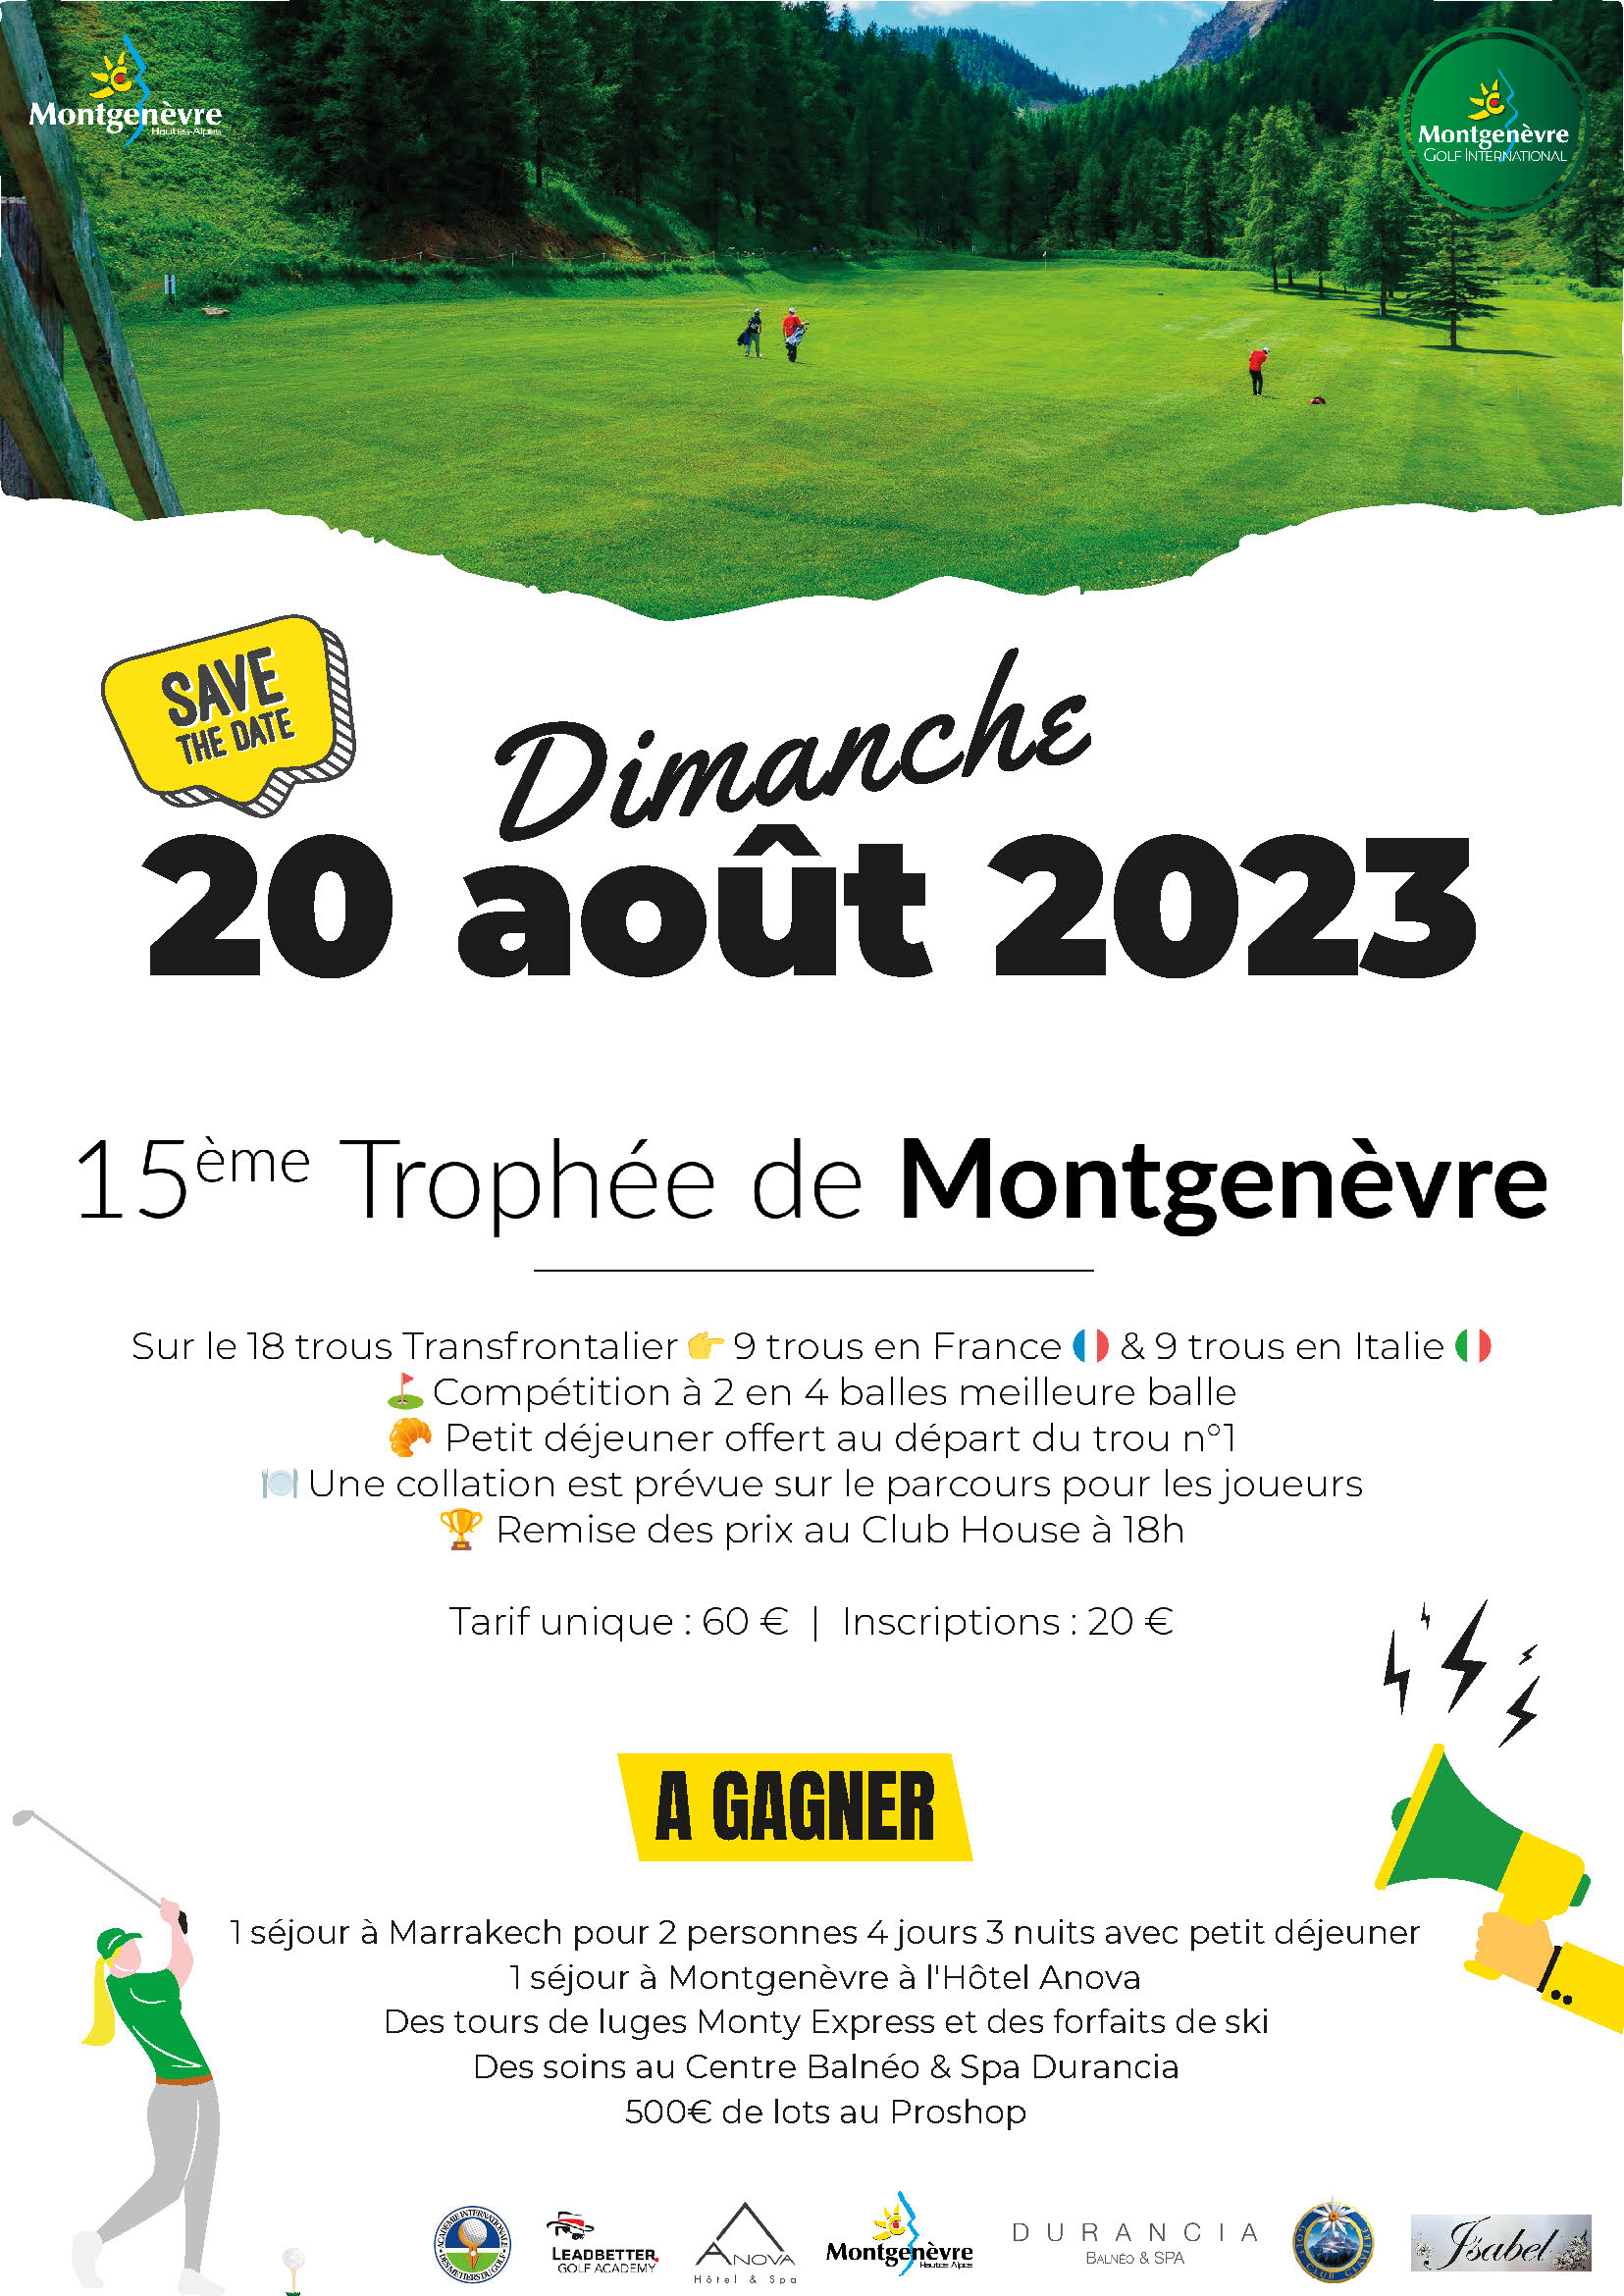 Trophée de Montgenèvre - 20 août 2023